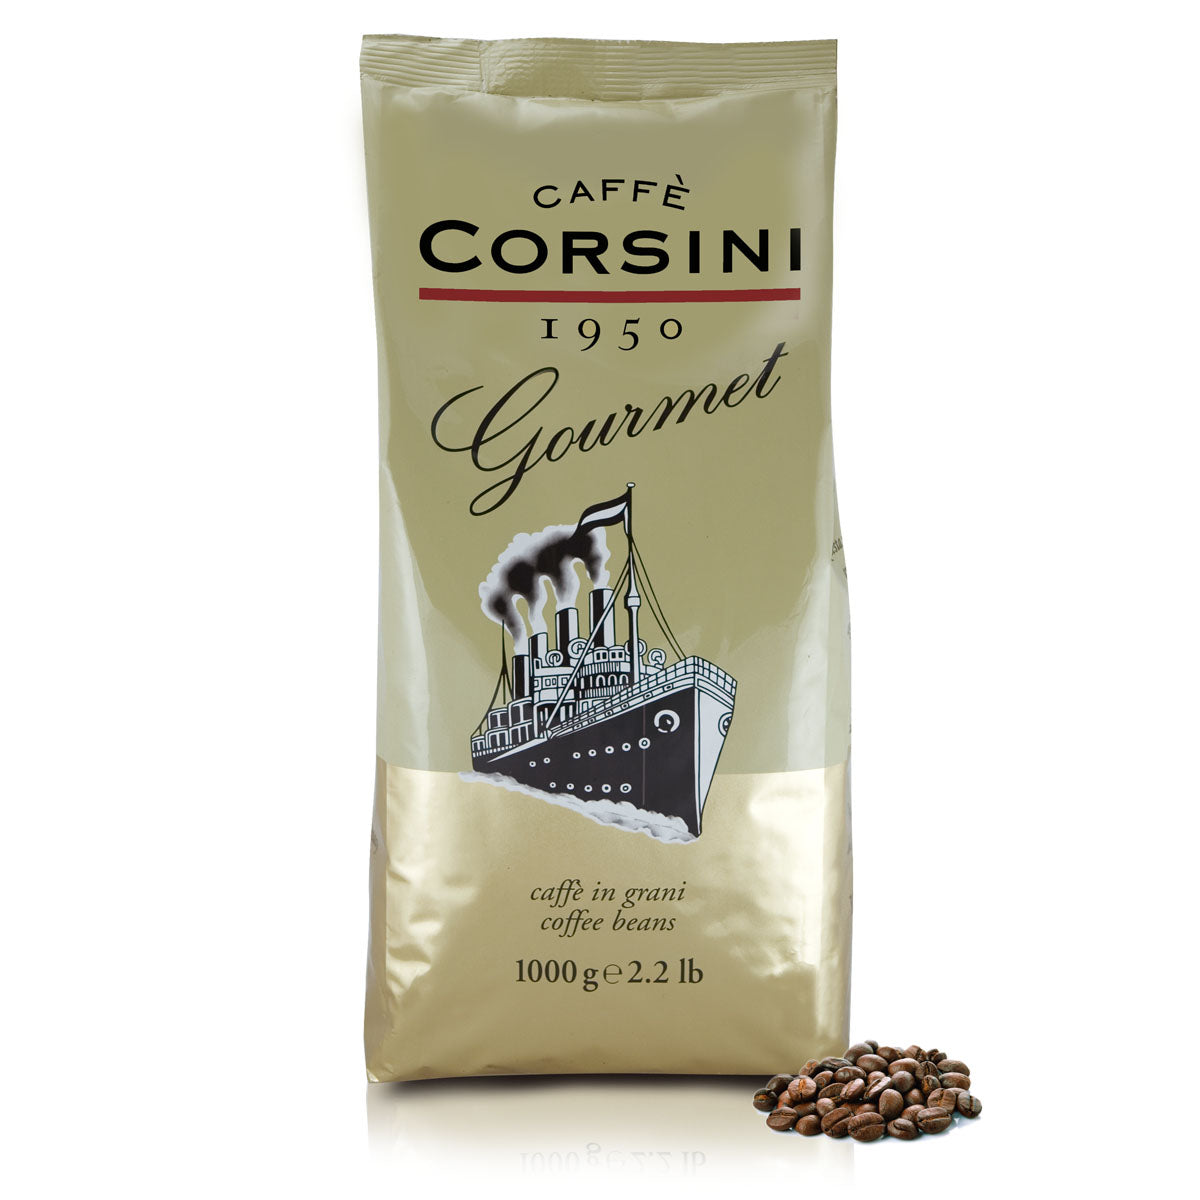 Coffee beans | Gourmet | 1 Kg | Box of 8 packs